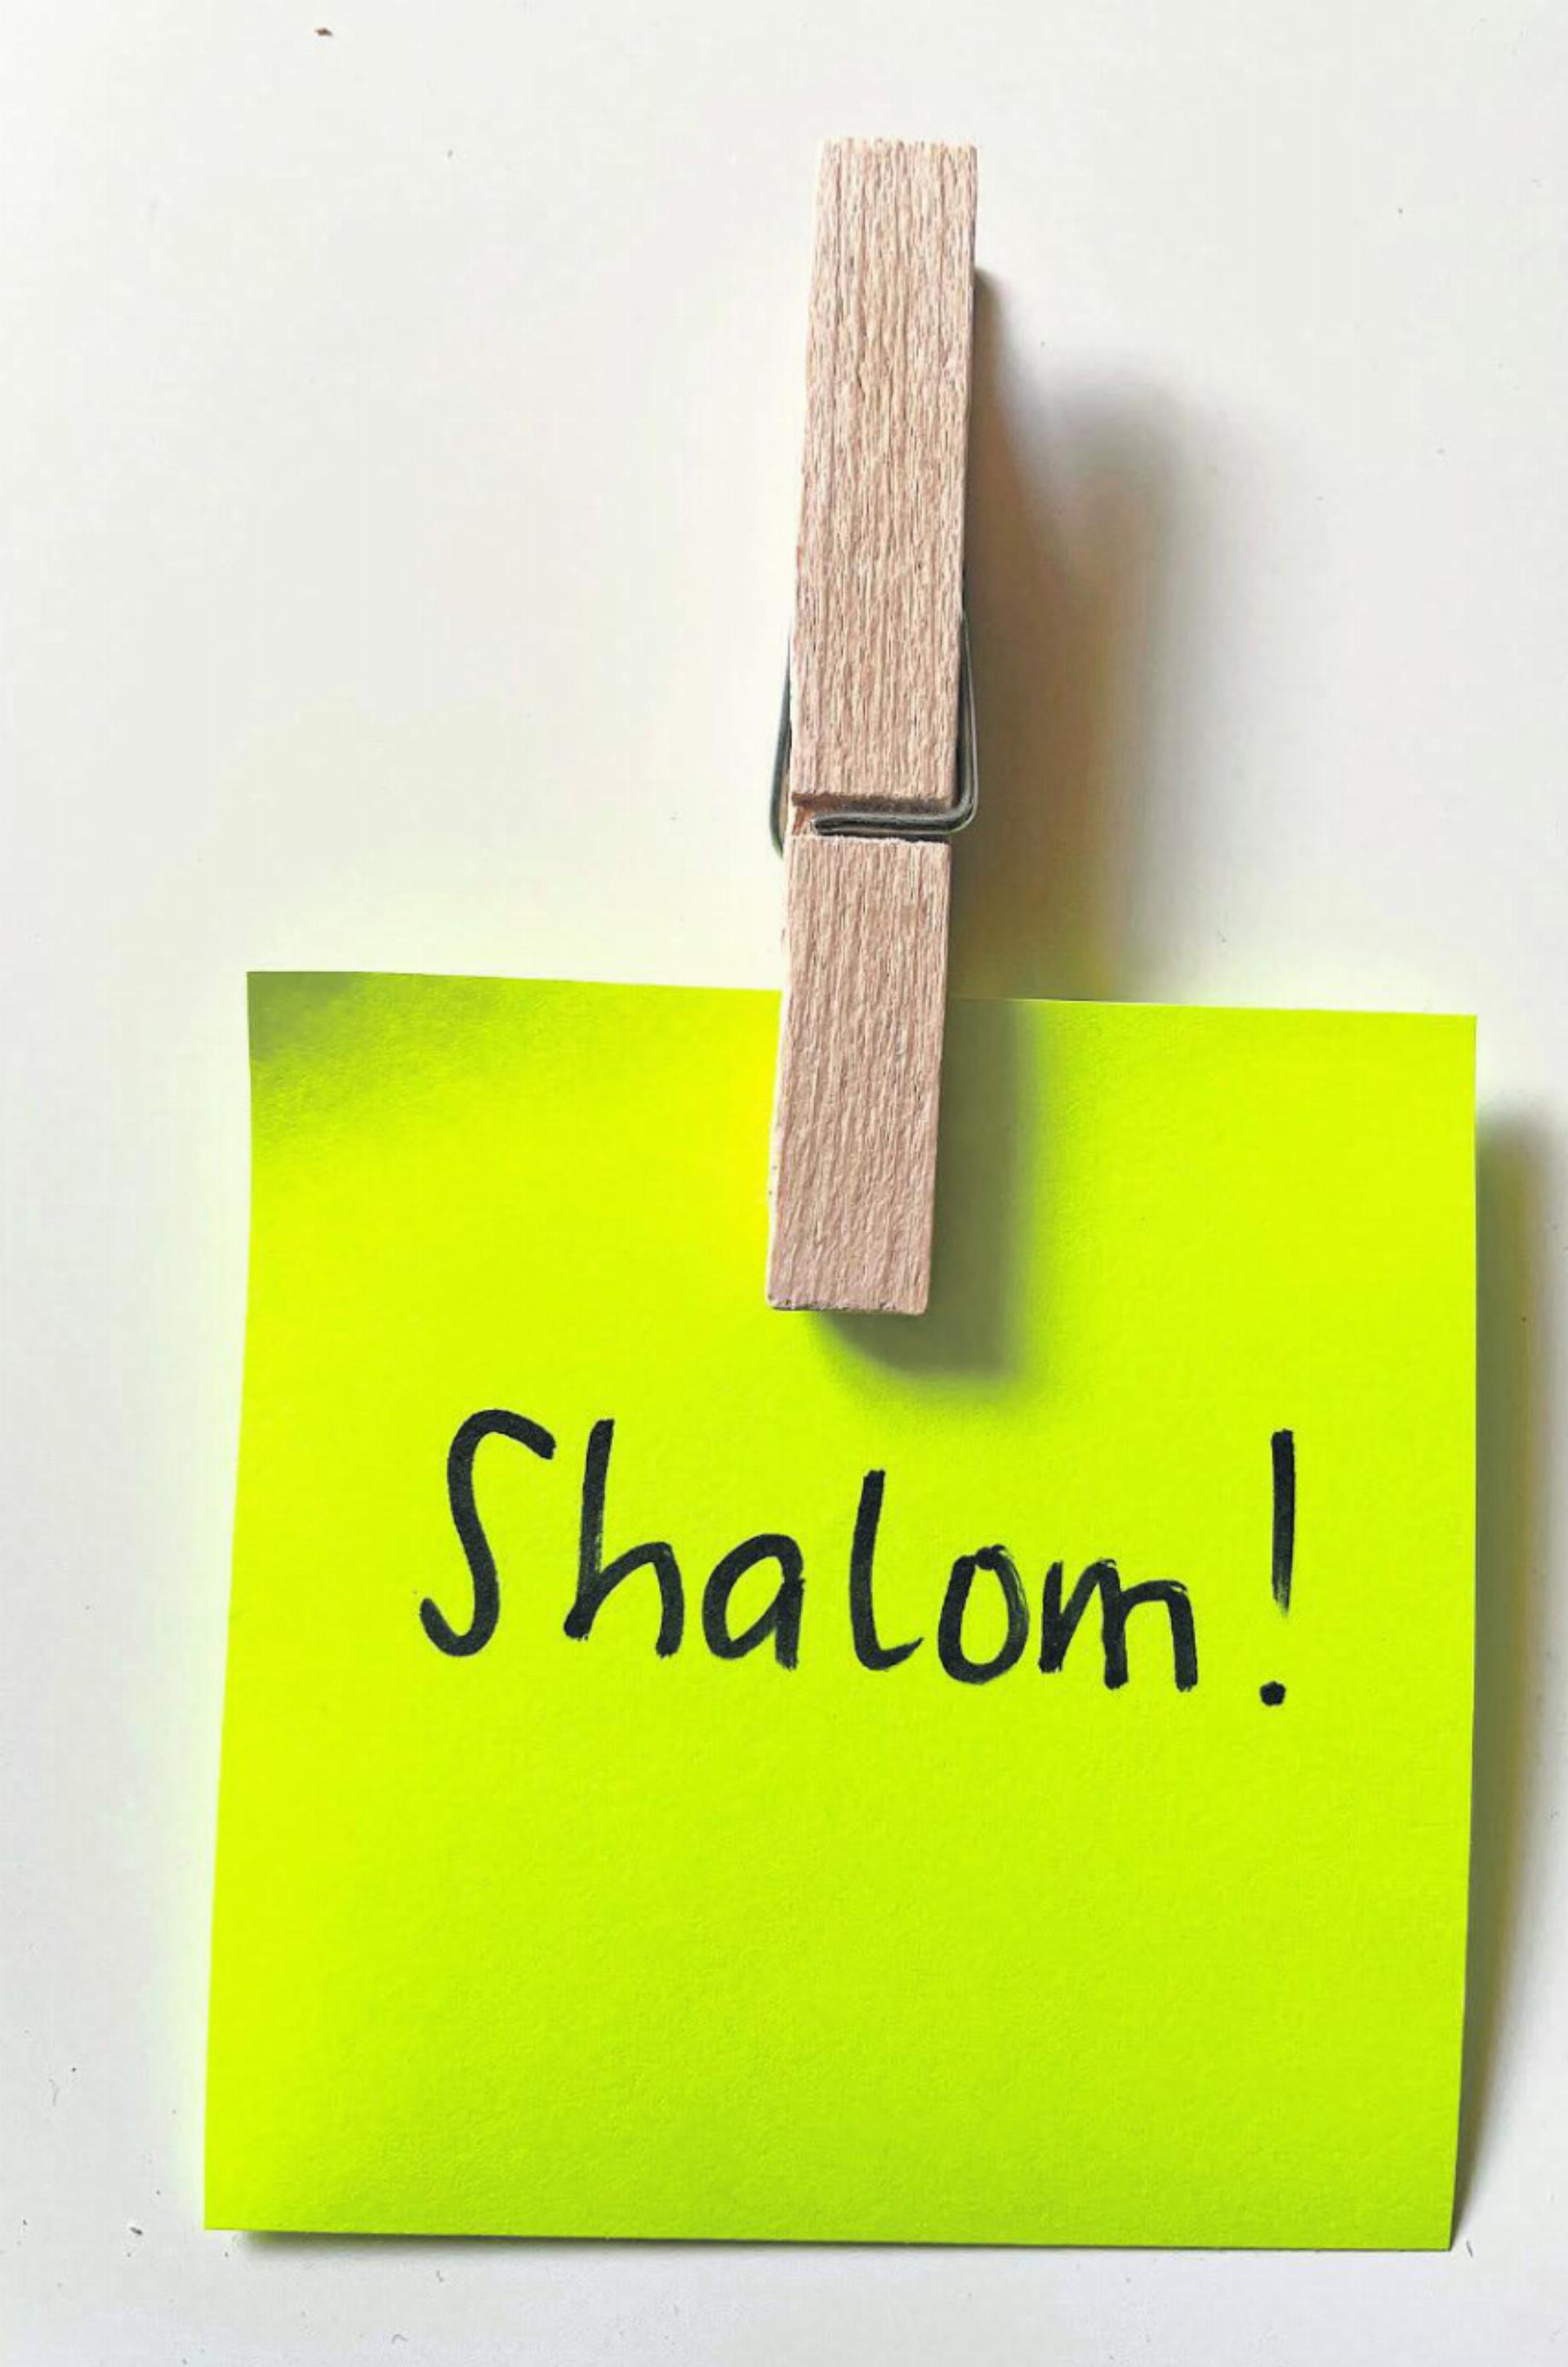 «Shalom» – Friedensgruss FOTO: PETER KLOPFENSTEIN